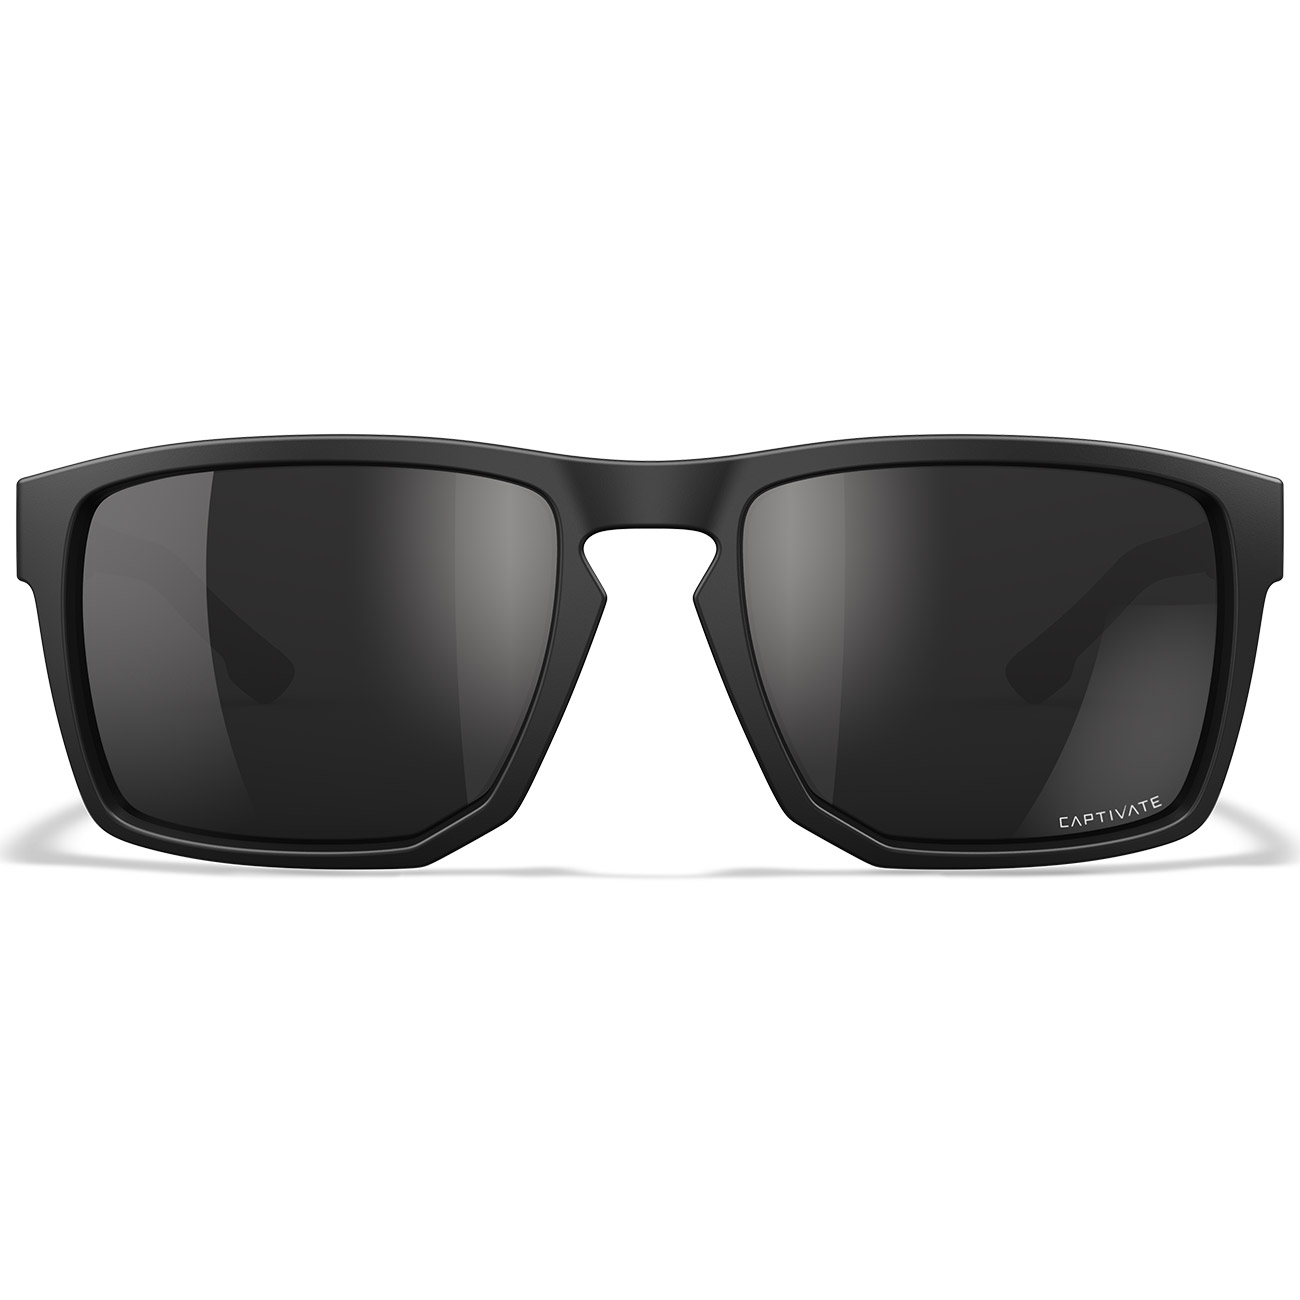 Wiley X Sonnebrille Founder Captivate matt schwarz Glser schwarz verspiegelt und polarisiert inkl. Seitenschutz Bild 1